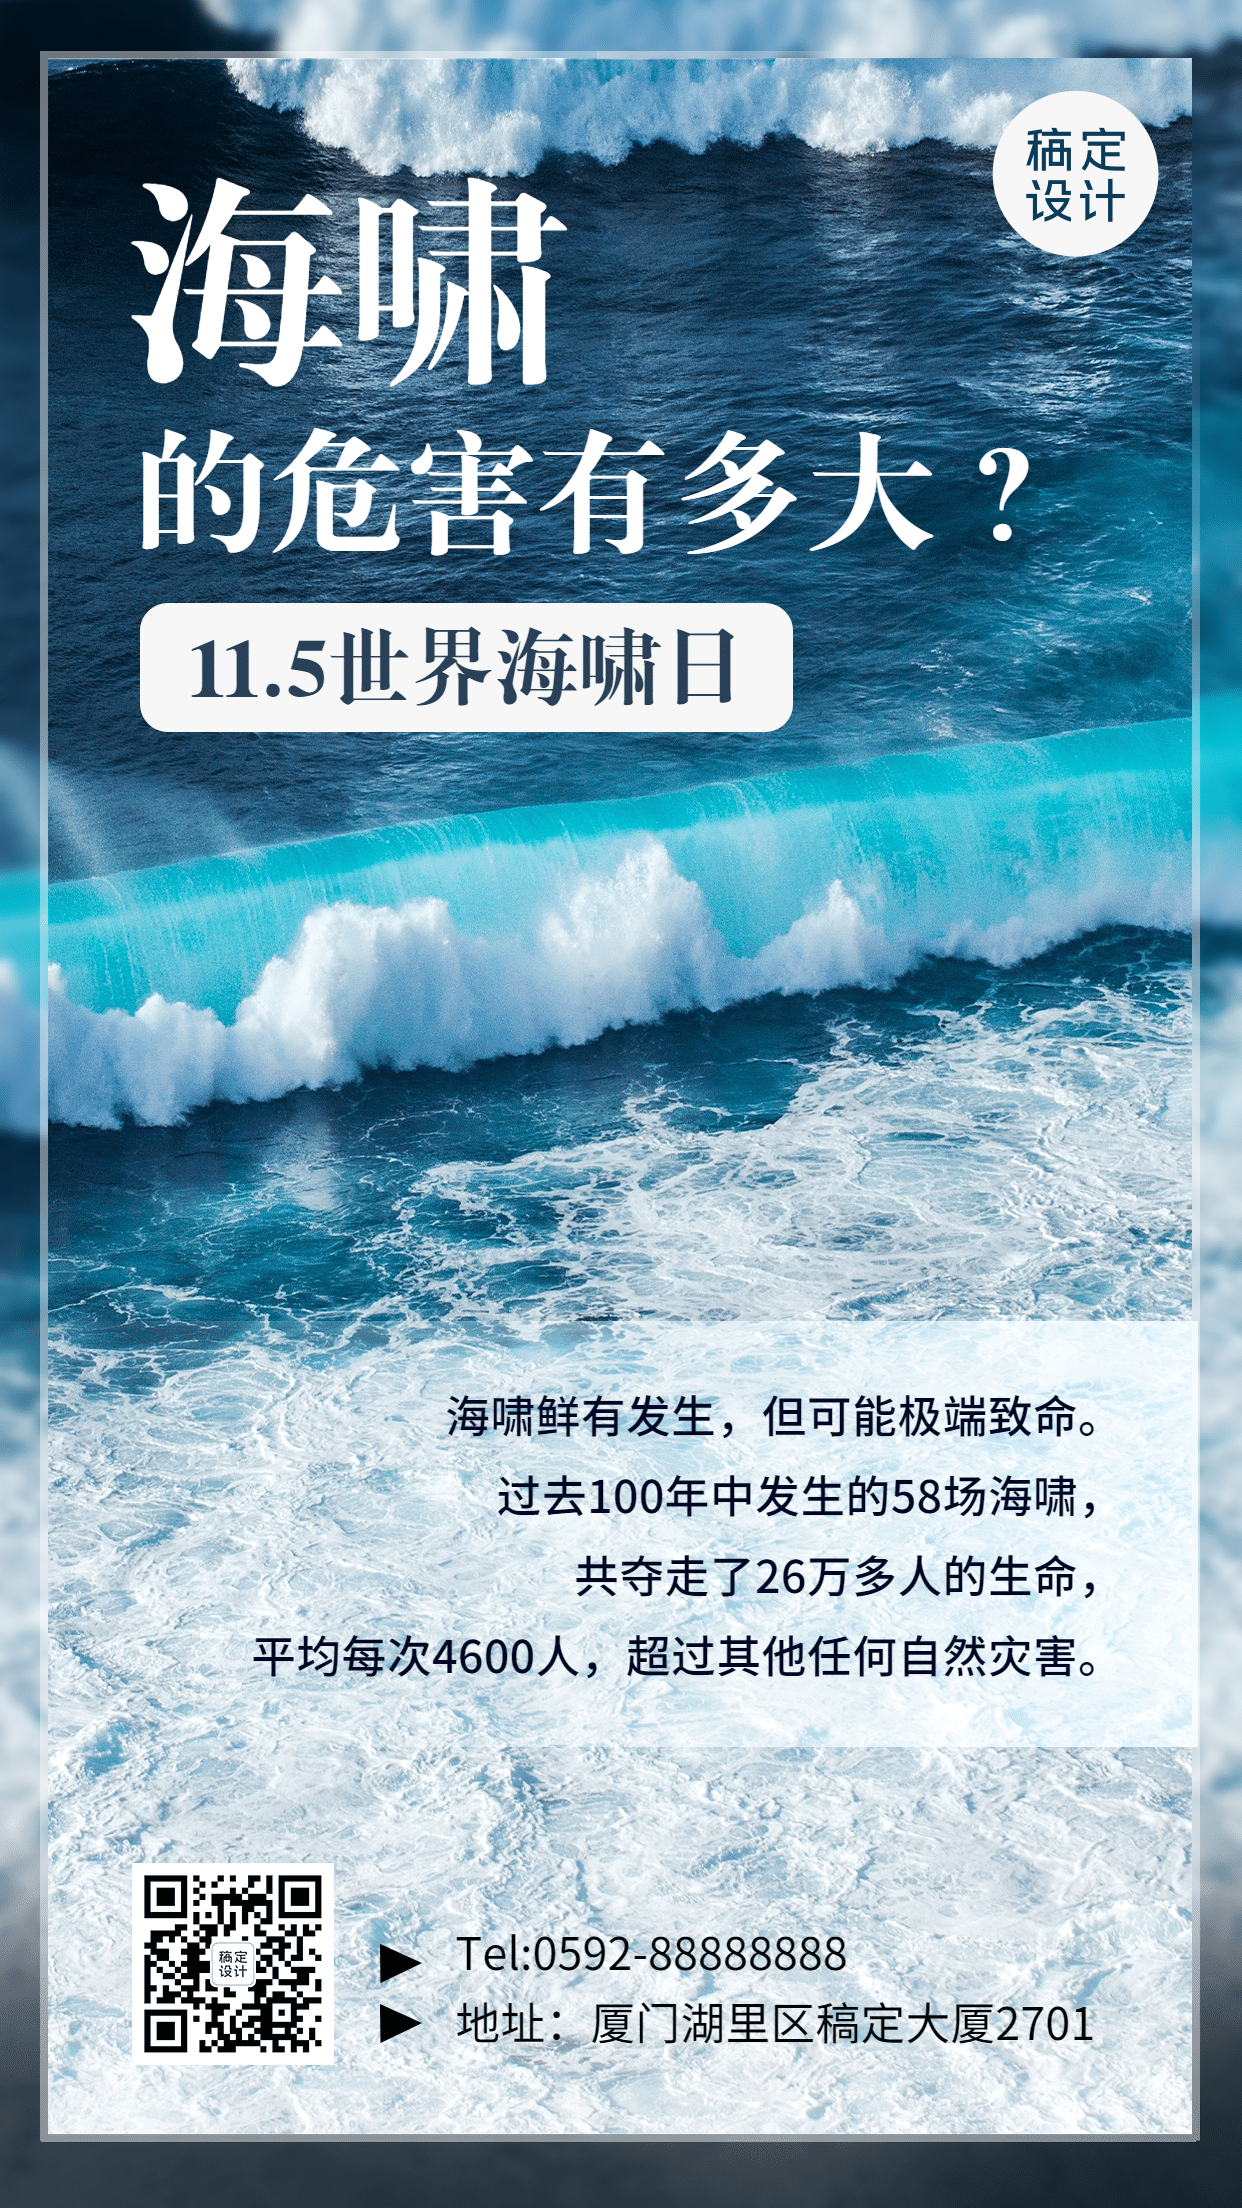 世界海啸日自然灾害知识科普实景手机海报